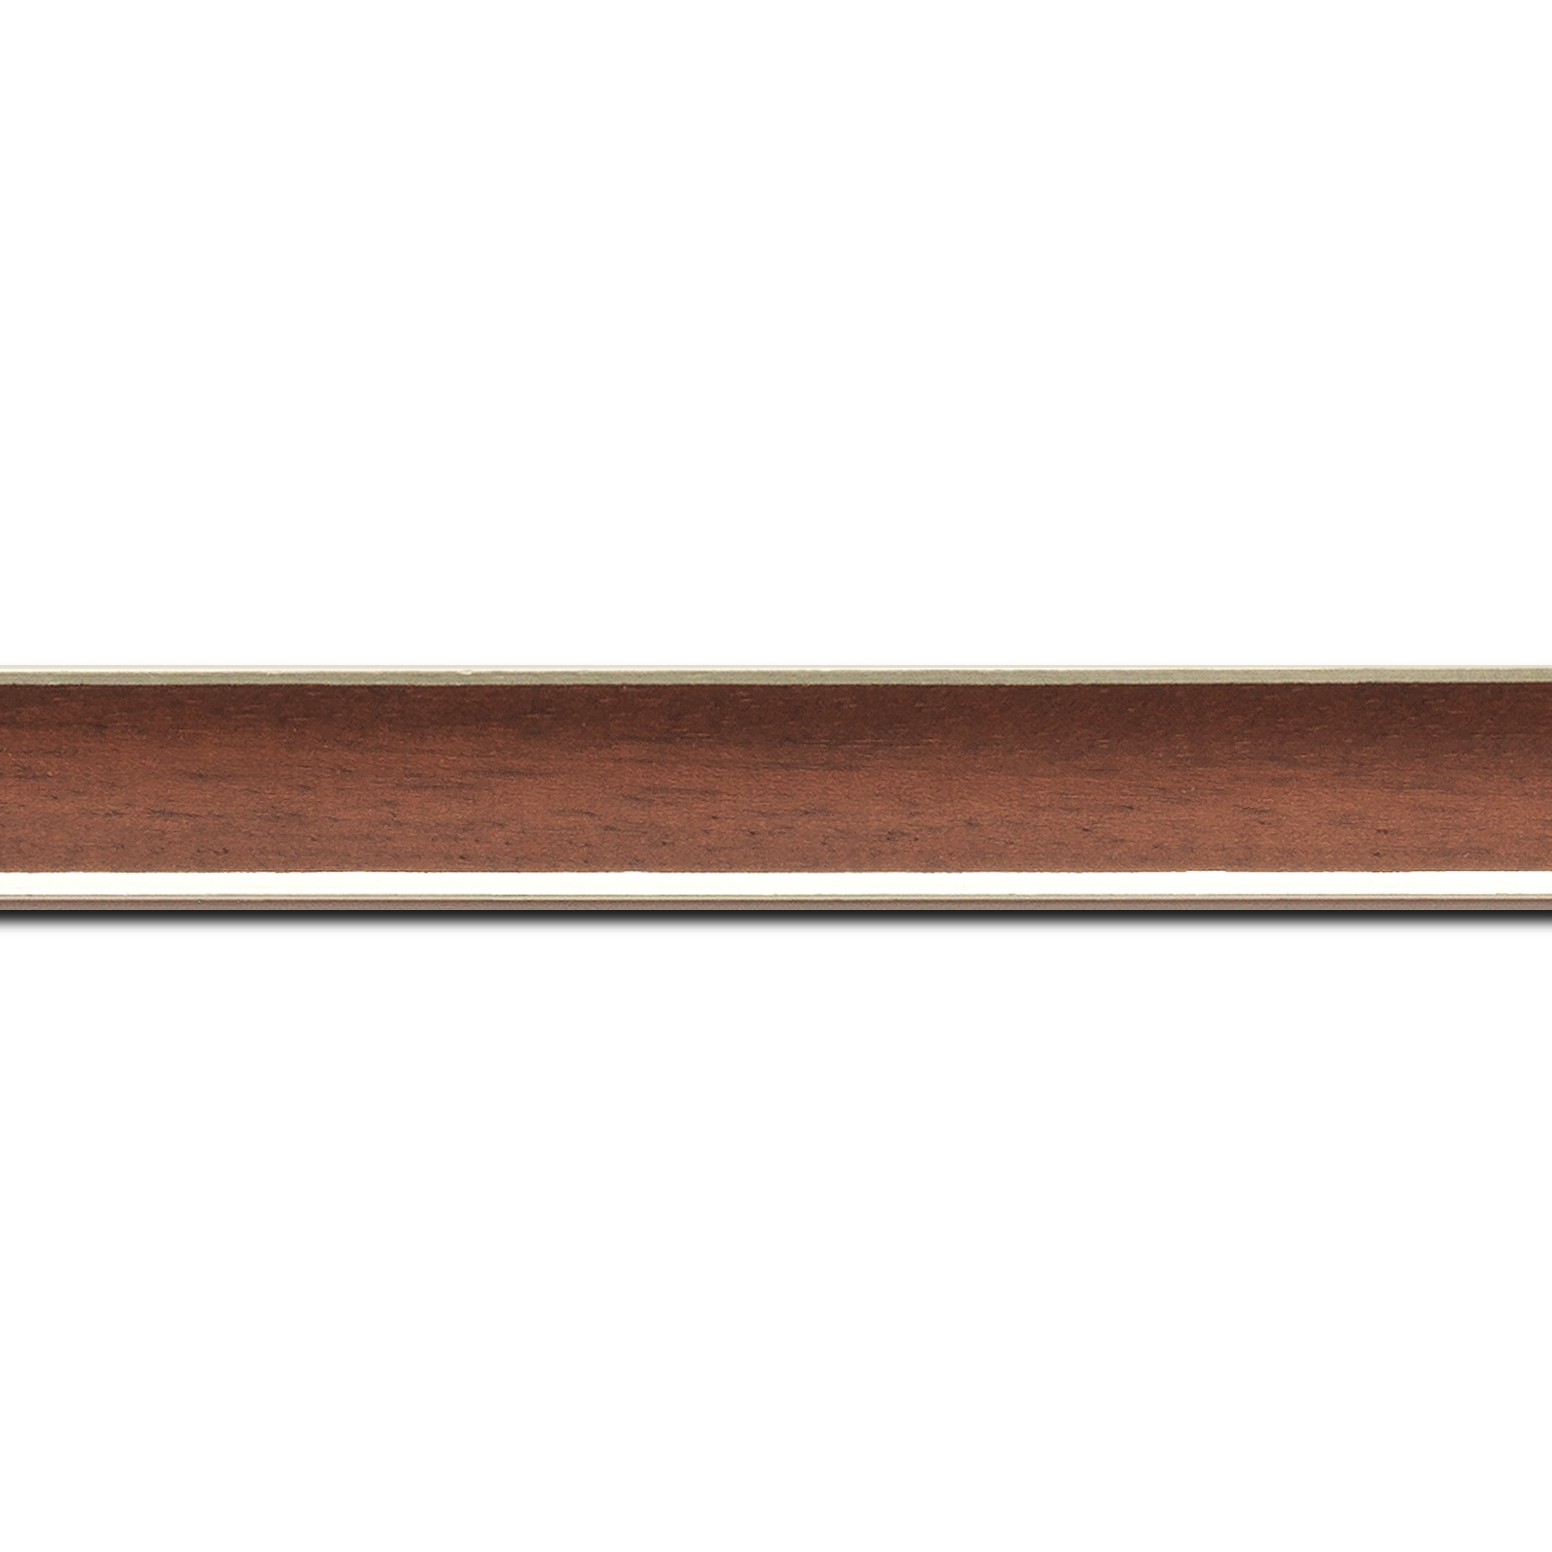 Baguette longueur 1.40m bois profil concave largeur 2.4cm couleur merisier  satiné  filet argent de chaque coté (pore du bois apparent)